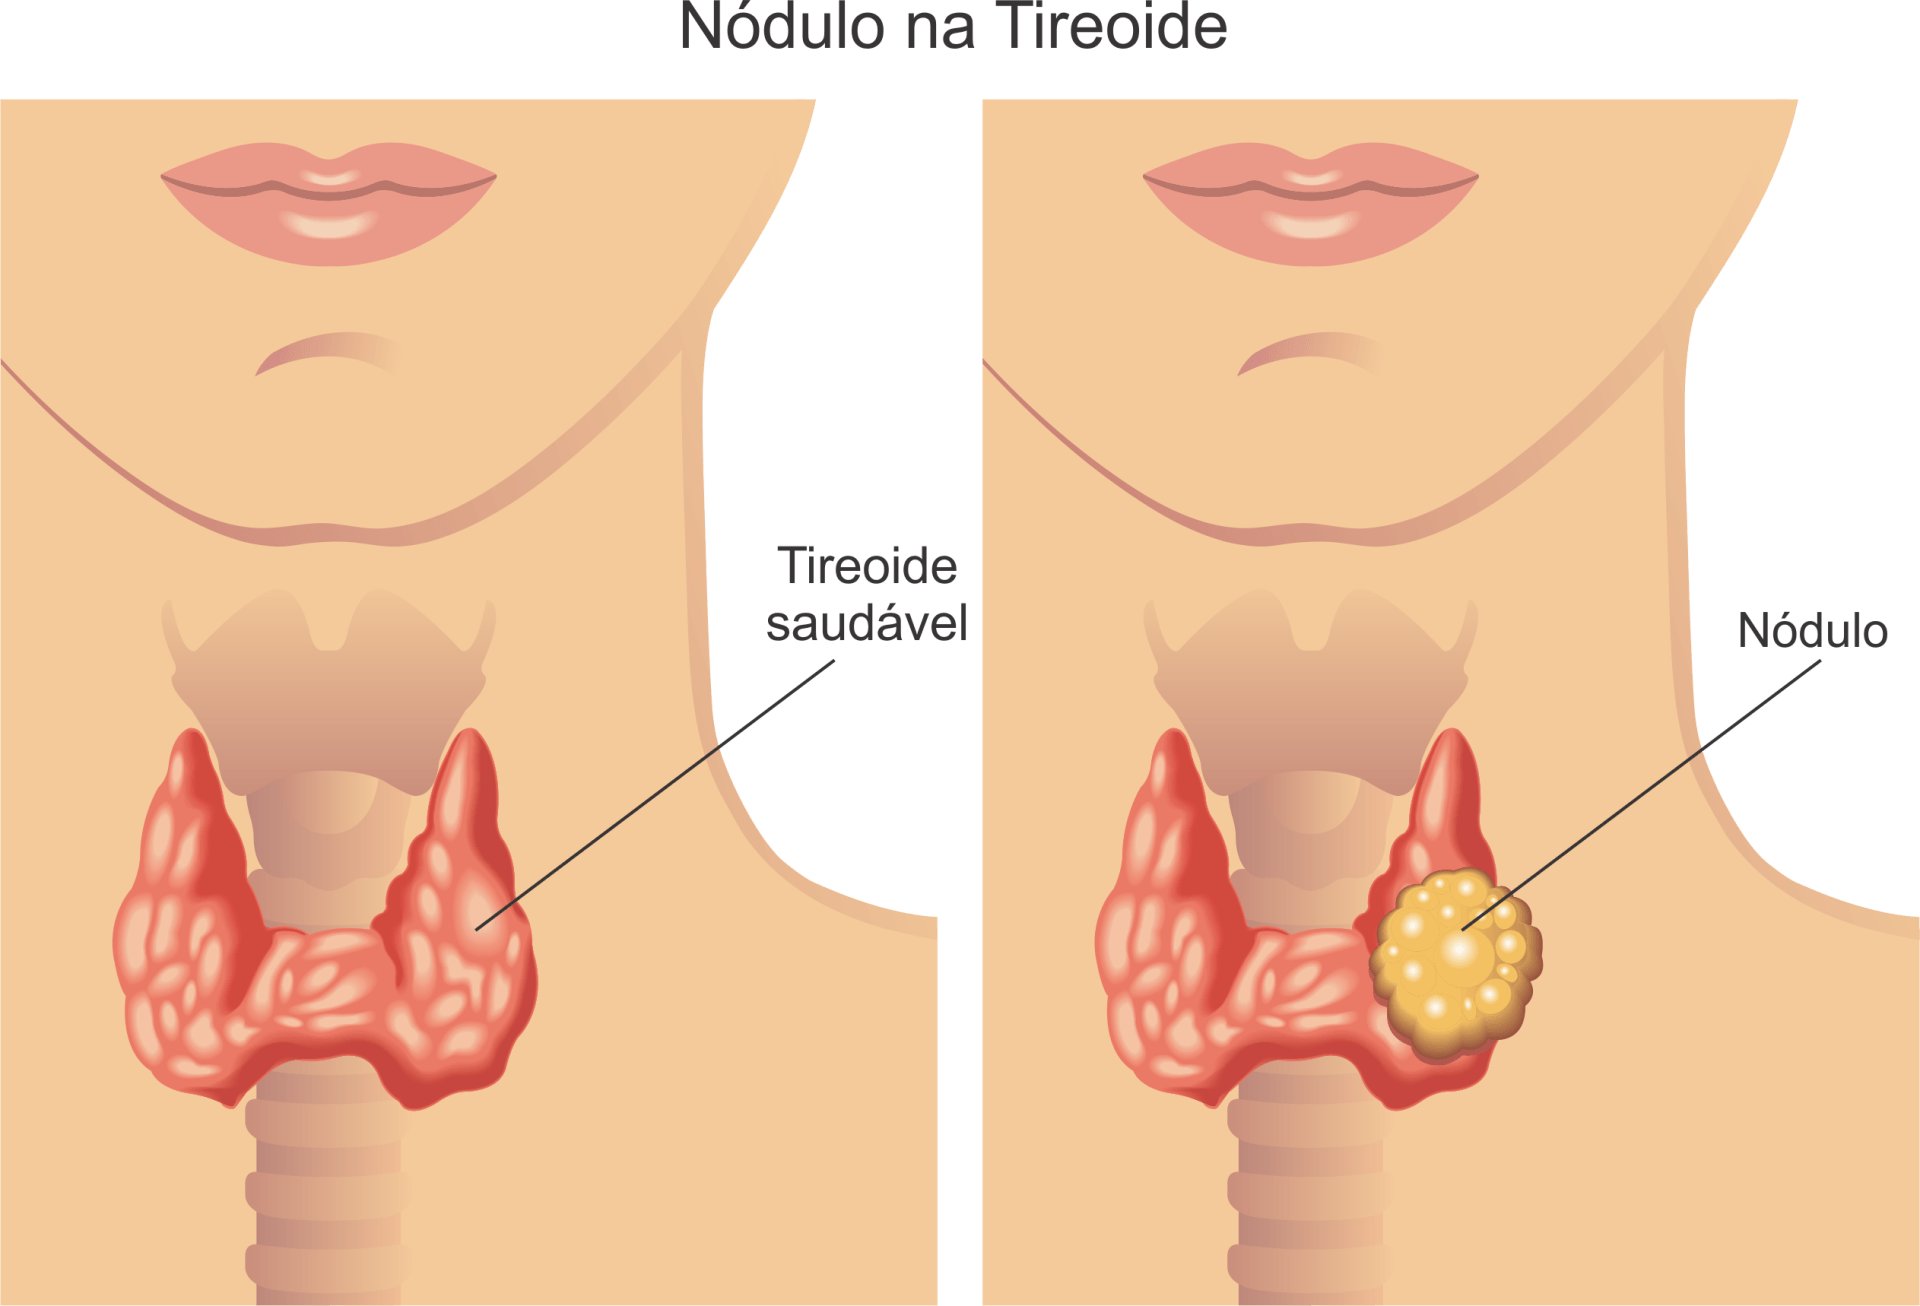 Do lado esquerdo uma tireoide saudável e do lado direito um nódulo na tireoide